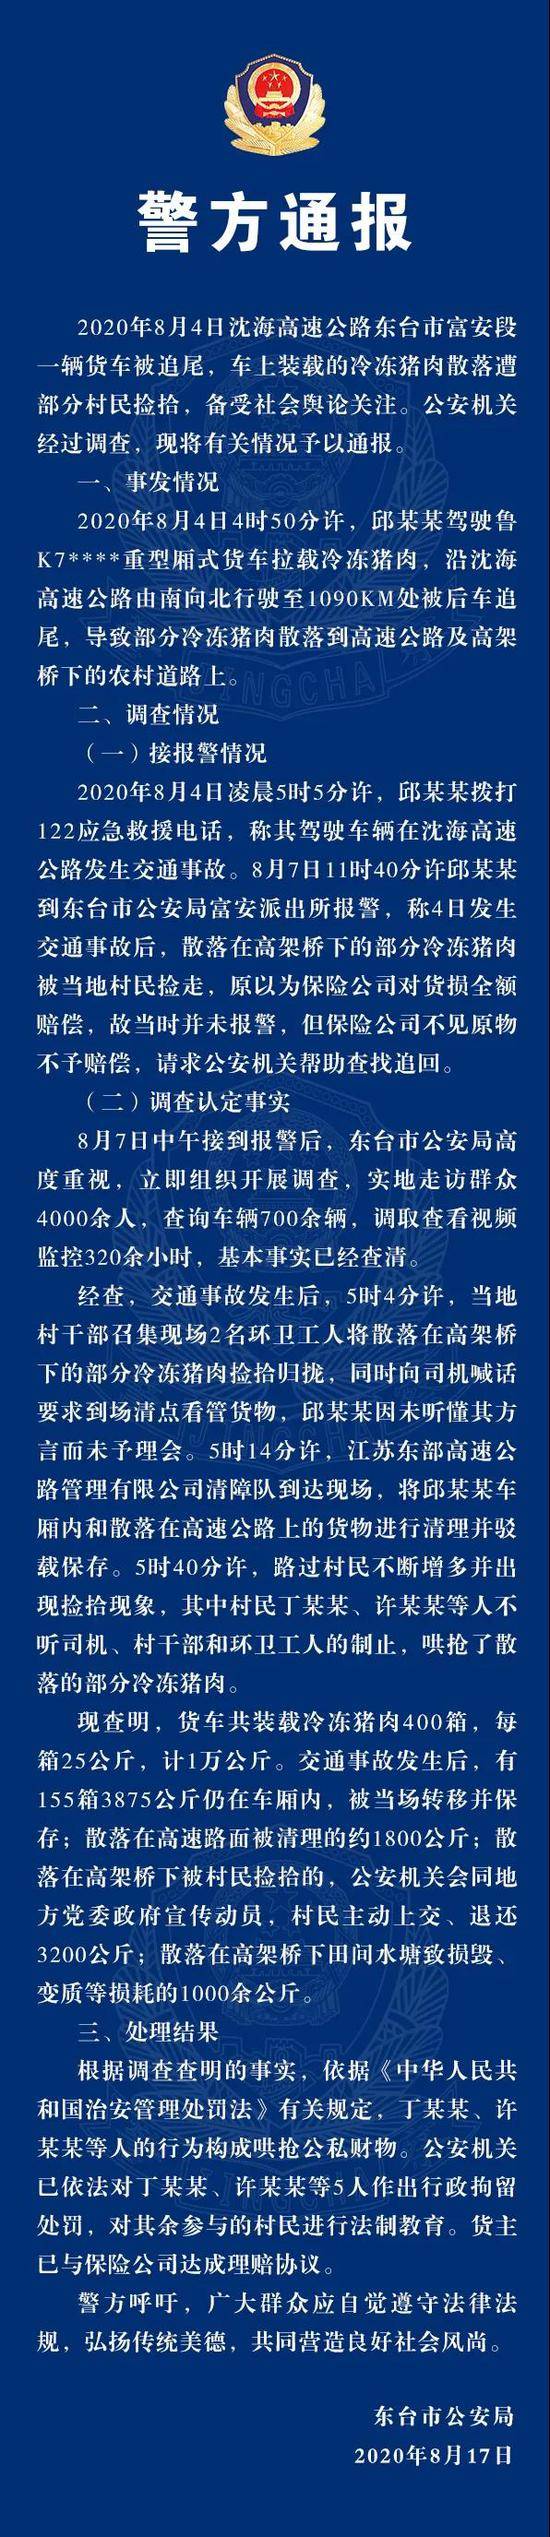 江苏东台警方通报“交通事故后猪肉遭哄抢”:5人被拘